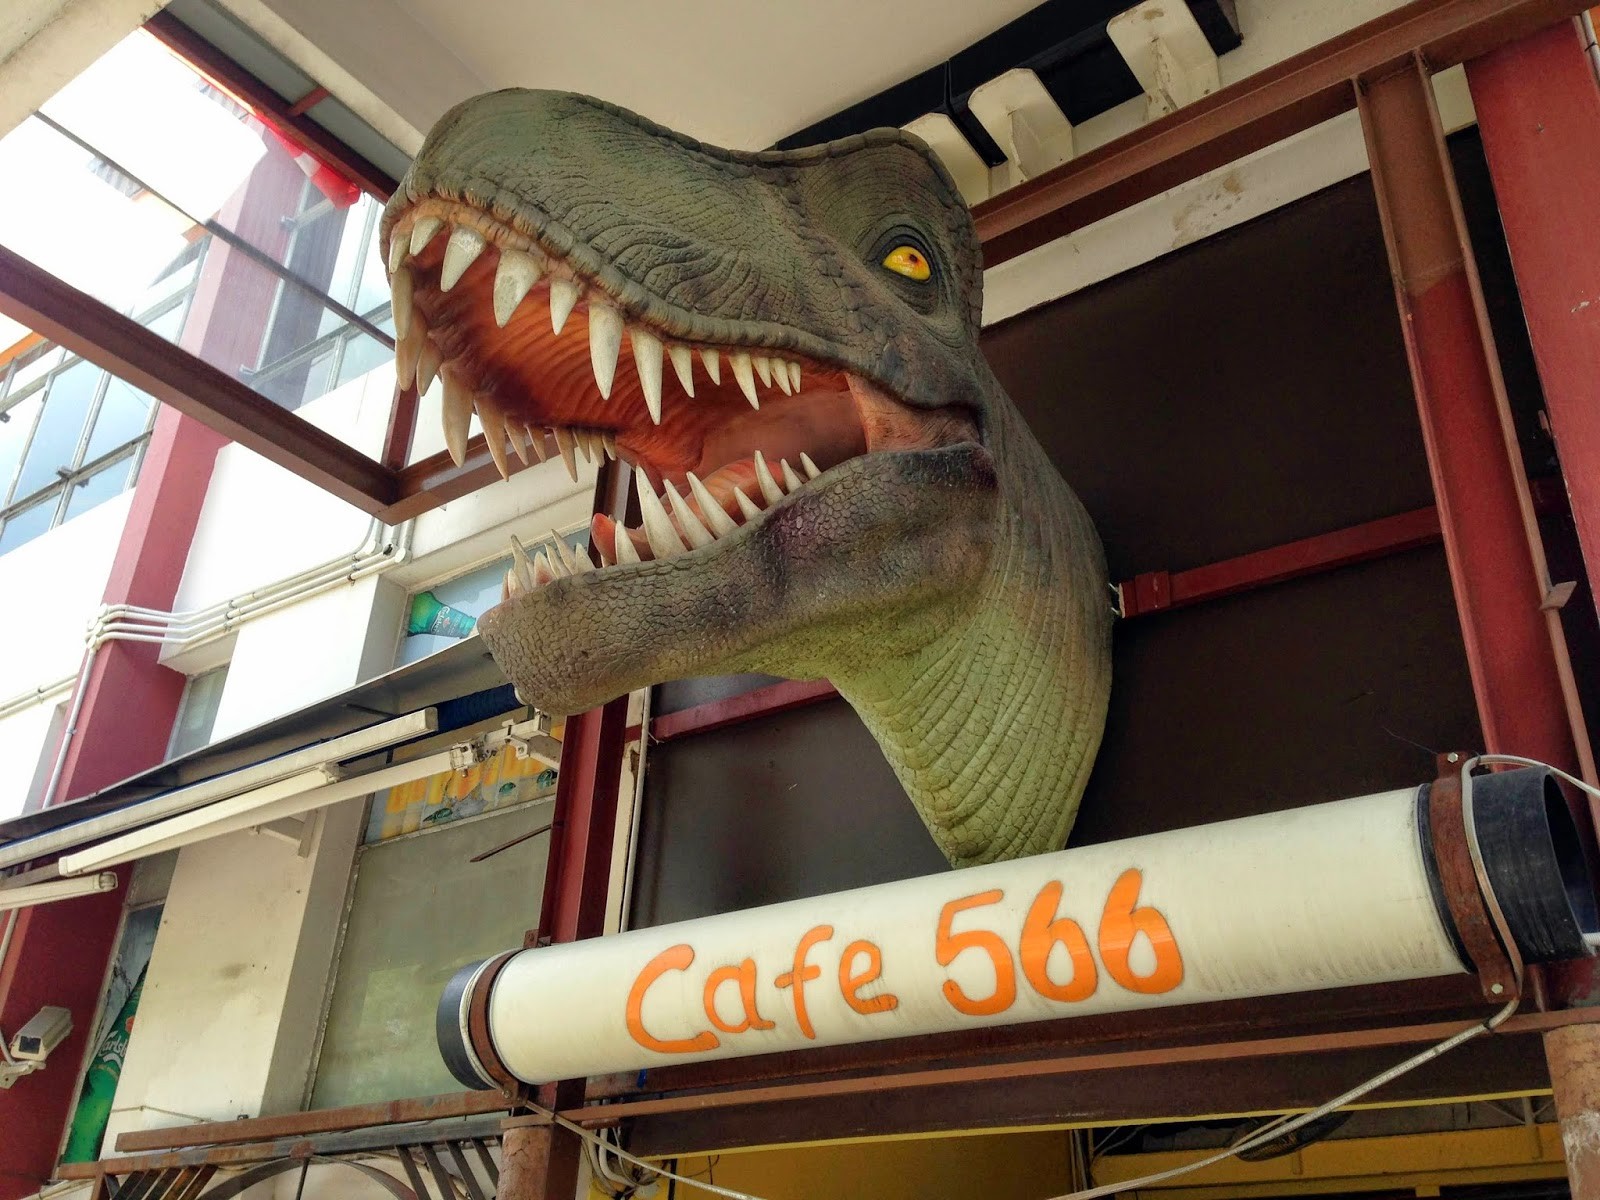 Cafe 566 at mandai